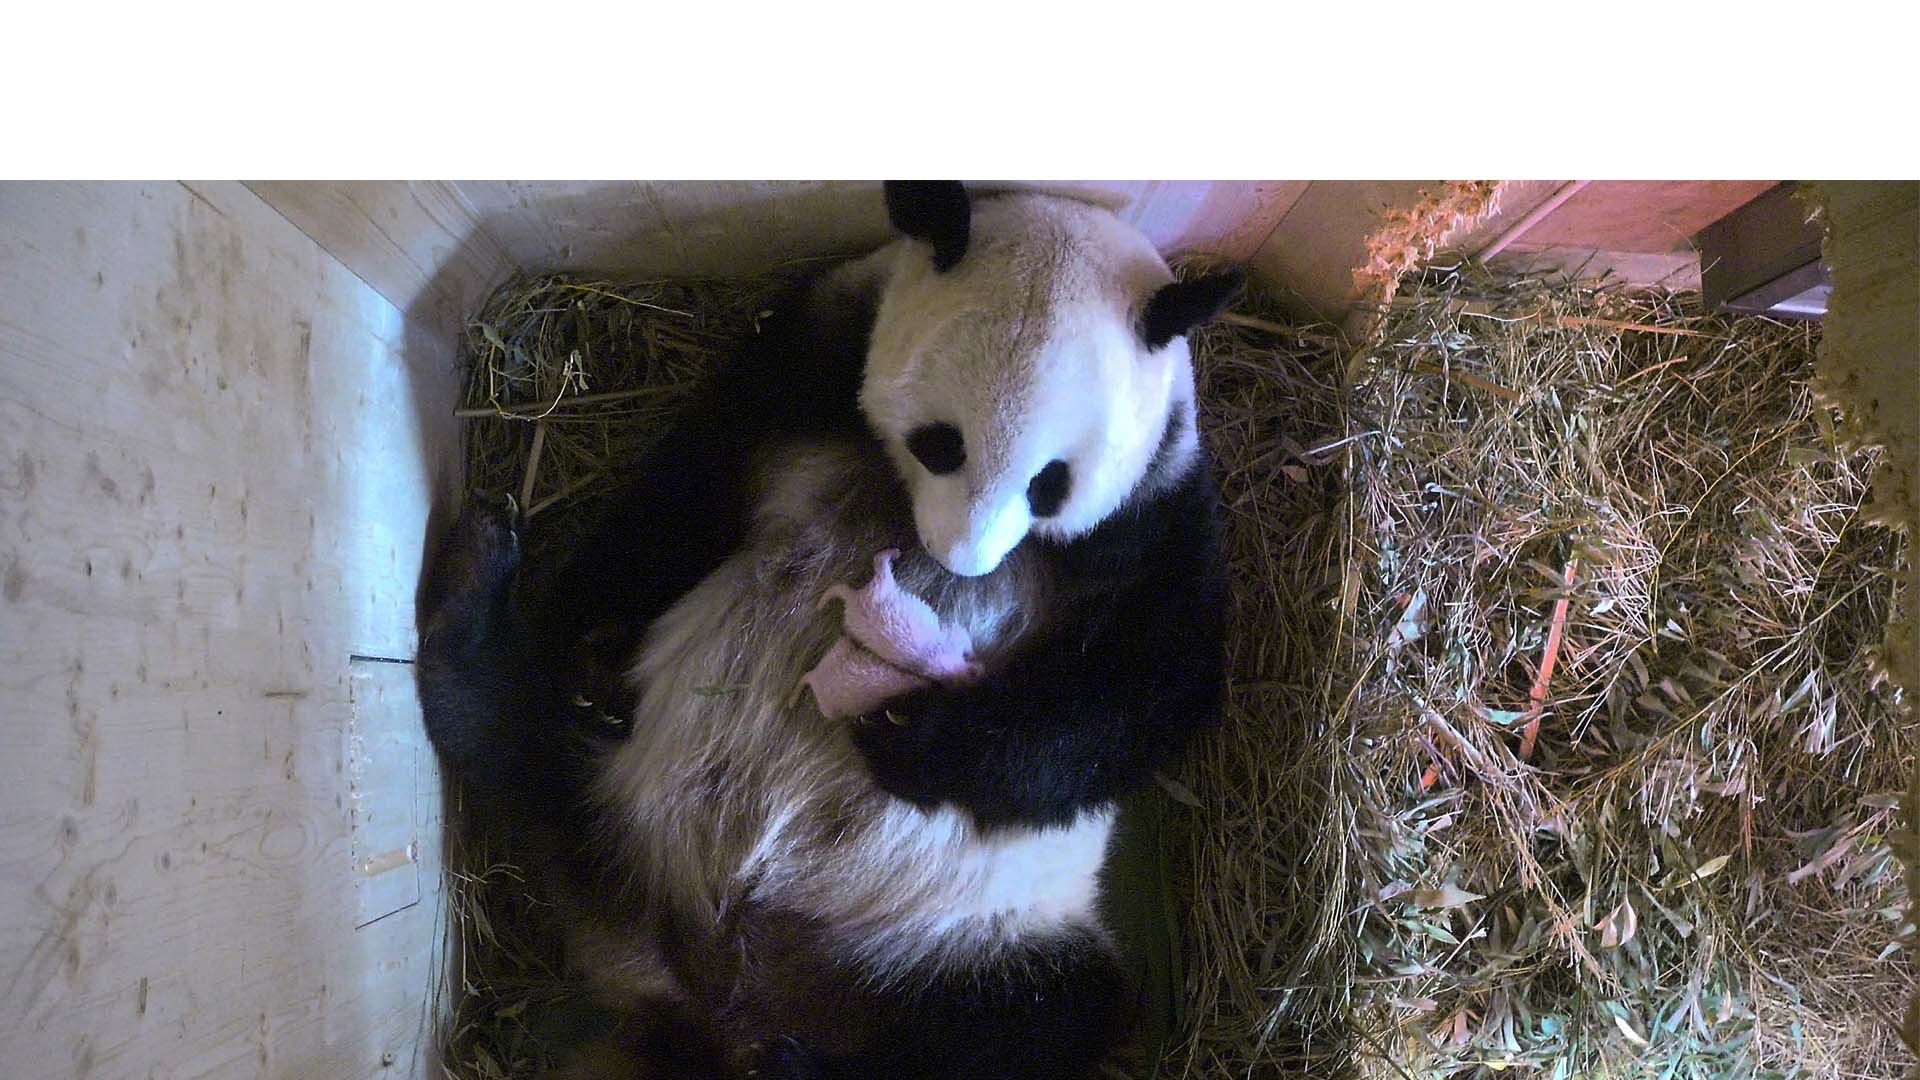 Zoologico de Viena confirma que su osa Yang Yang no tuvo un pequeño osito sino dos y que ambos están en perfecto estado de salud tras sus primeros días